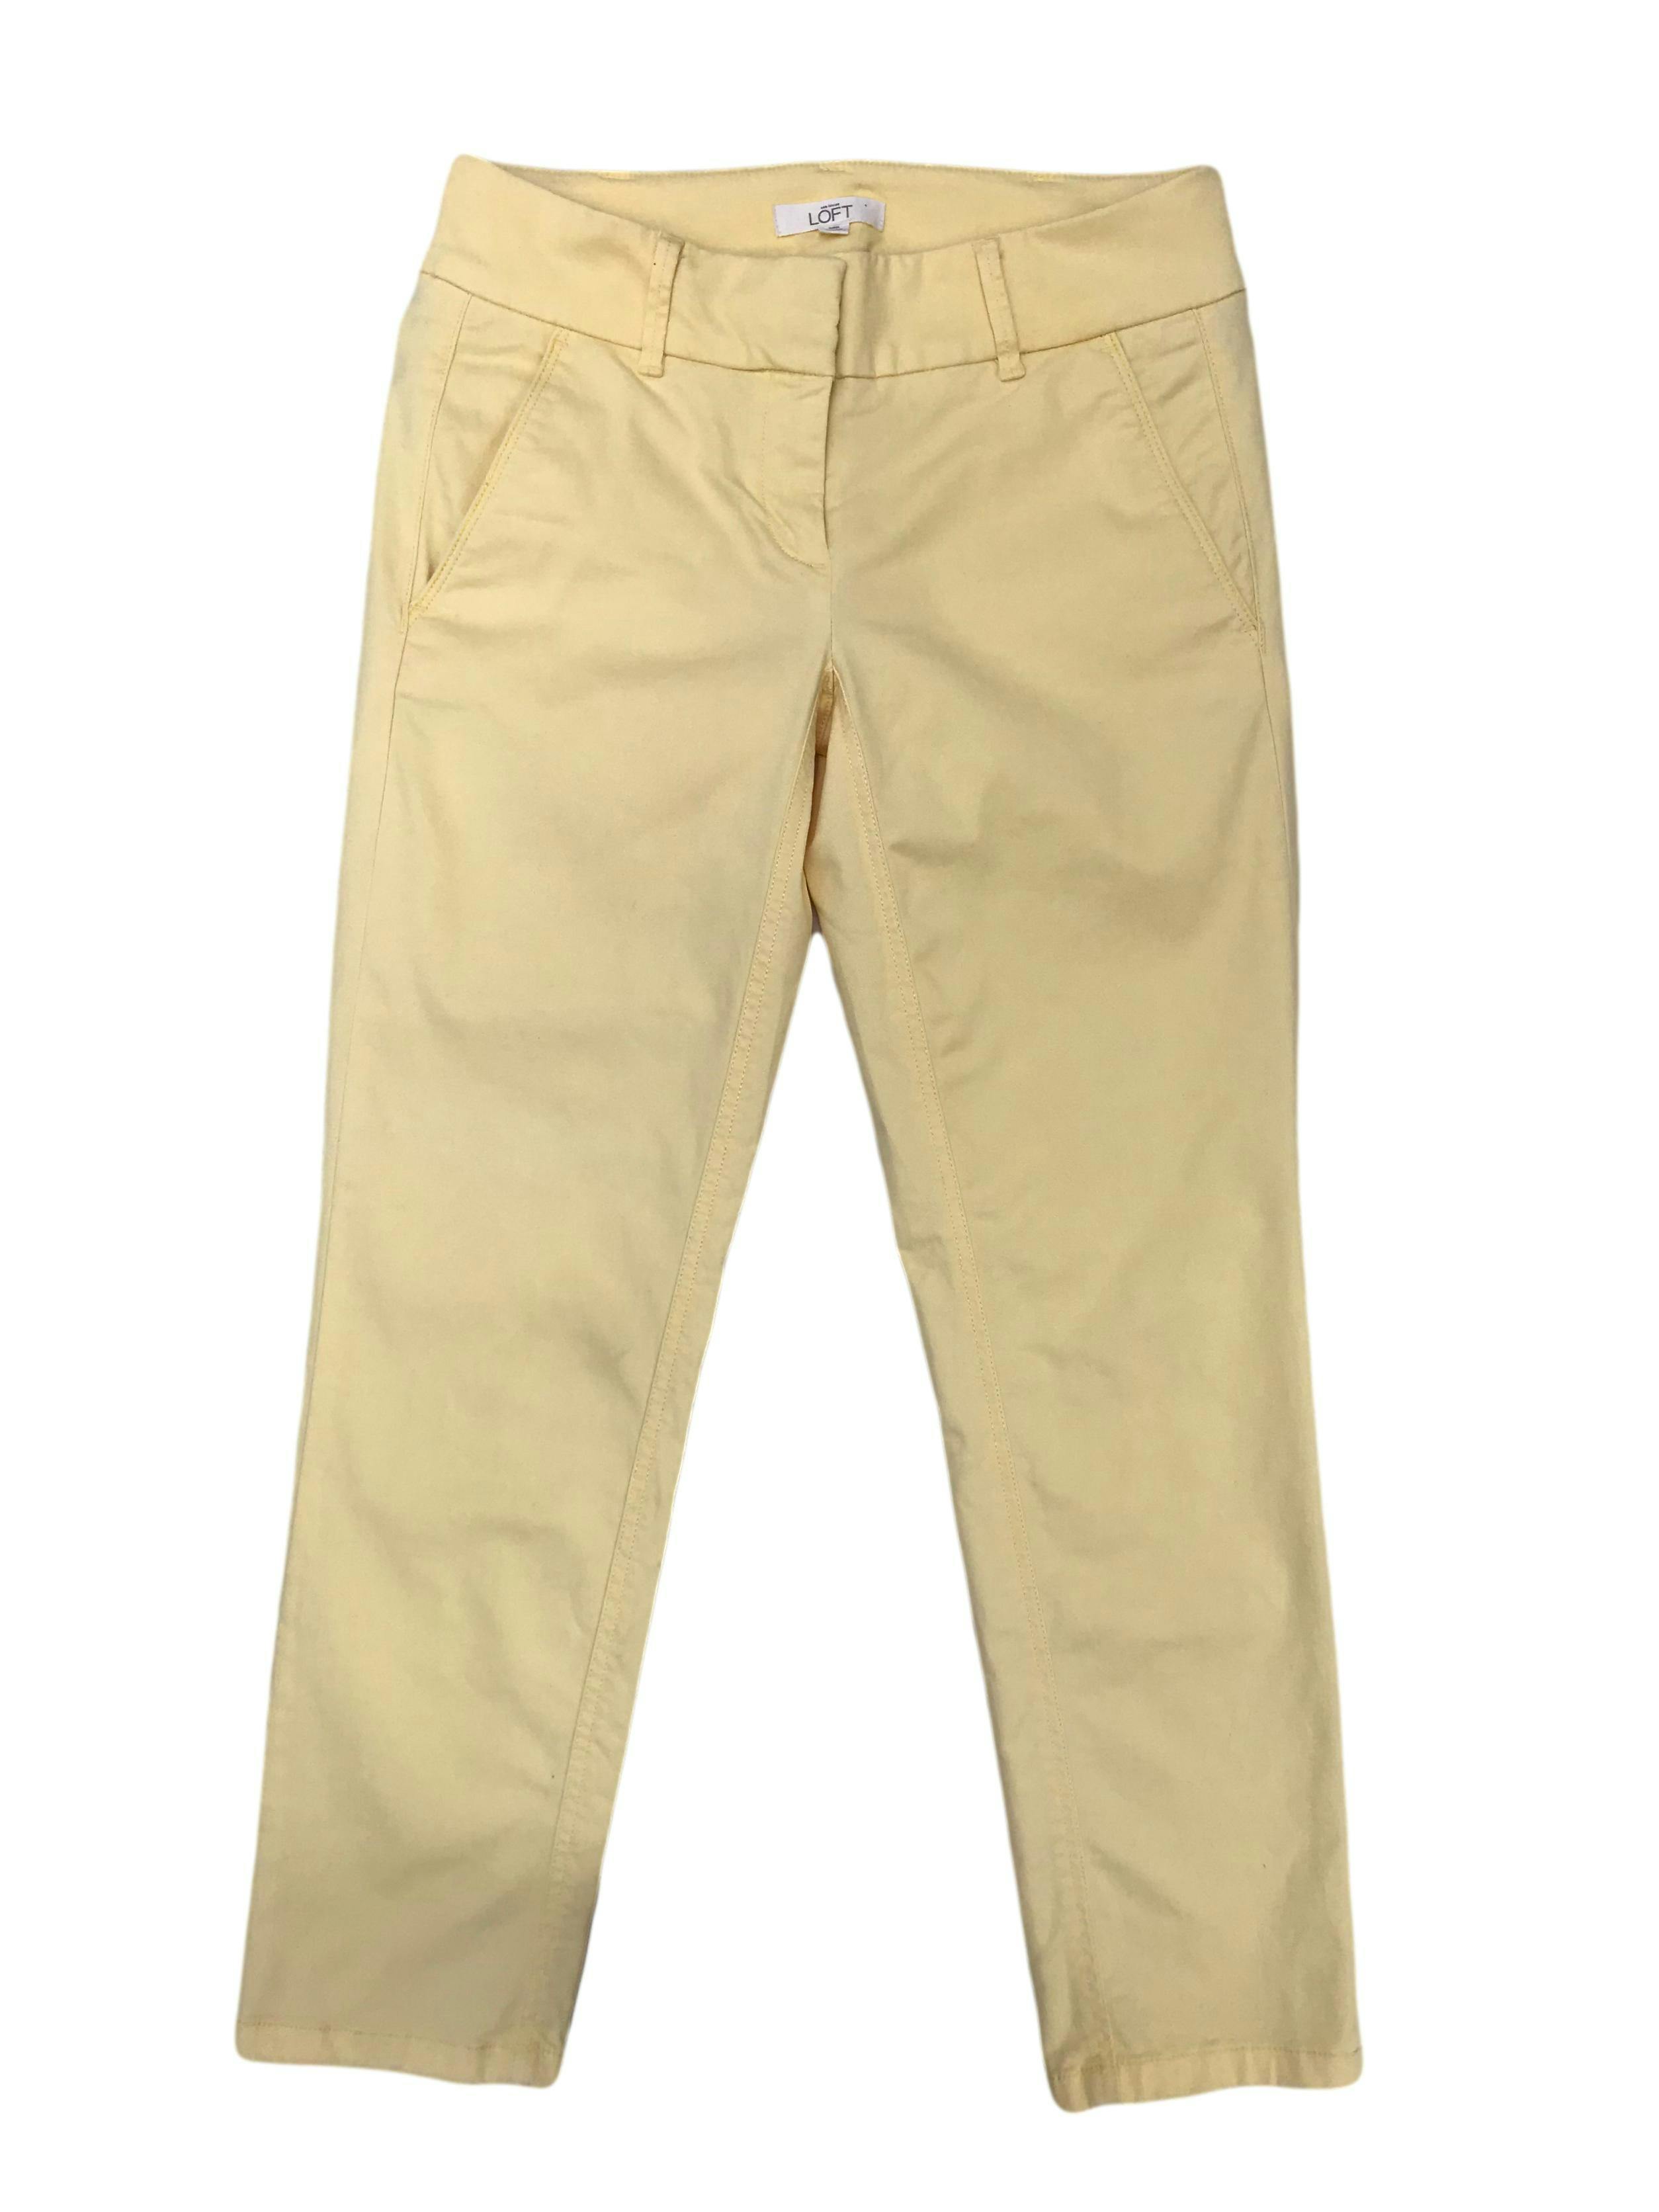 Pantalón Loft 98% algodón amarillo pastel, tipo medio. Pretina 76cm Cadera 90cm 